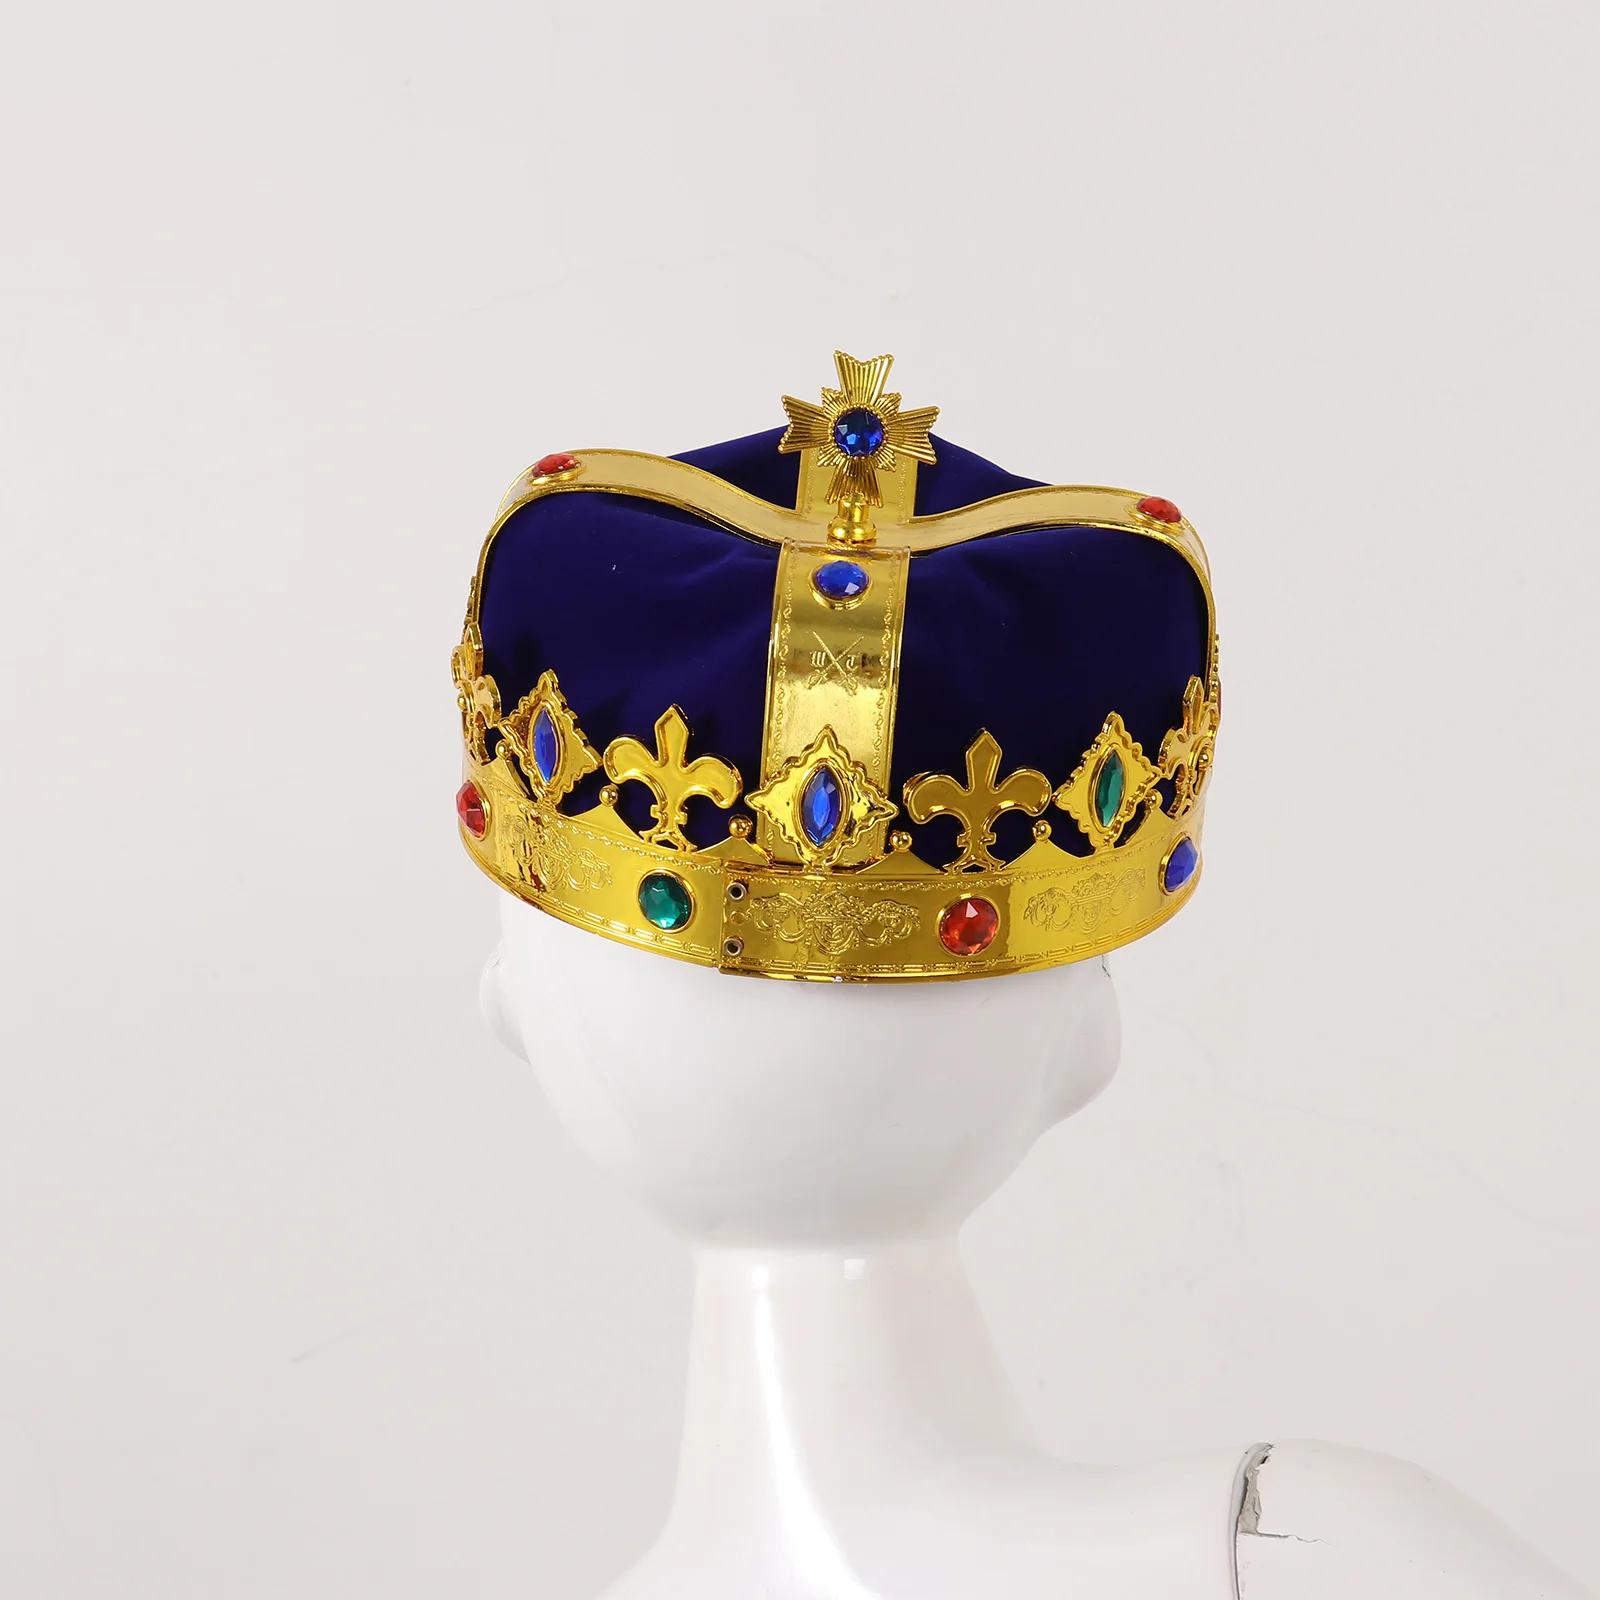 IMIKEYA Corona con Joyas de Royal King Queen Carnaval Cosplay Sombreros de Fiesta Accesorios de Vestir para Fiesta de Cumpleaños 